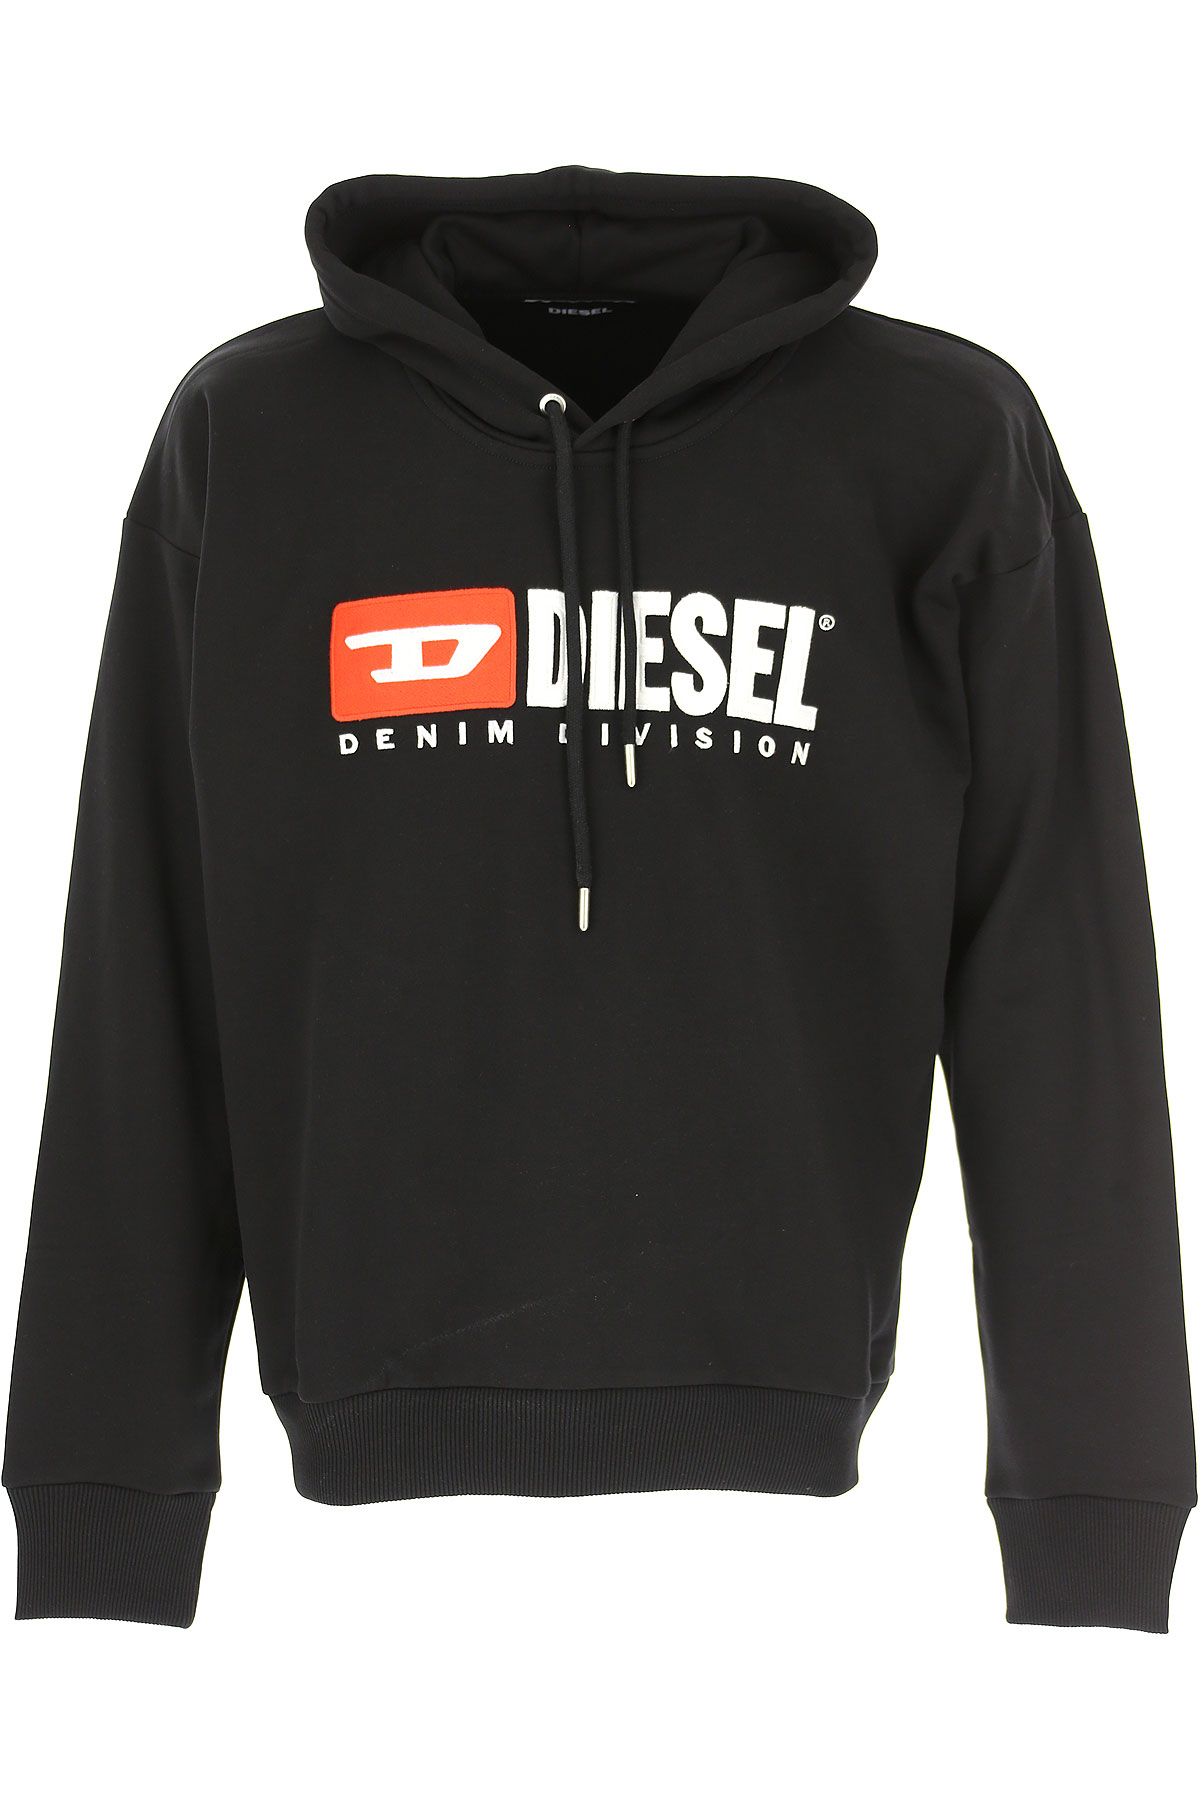 Diesel Sweatshirt für Herren, Kapuzenpulli, Hoodie, Sweats Günstig im Outlet Sale, Sdivision, Schwarz, Baumwolle, 2017, S XL